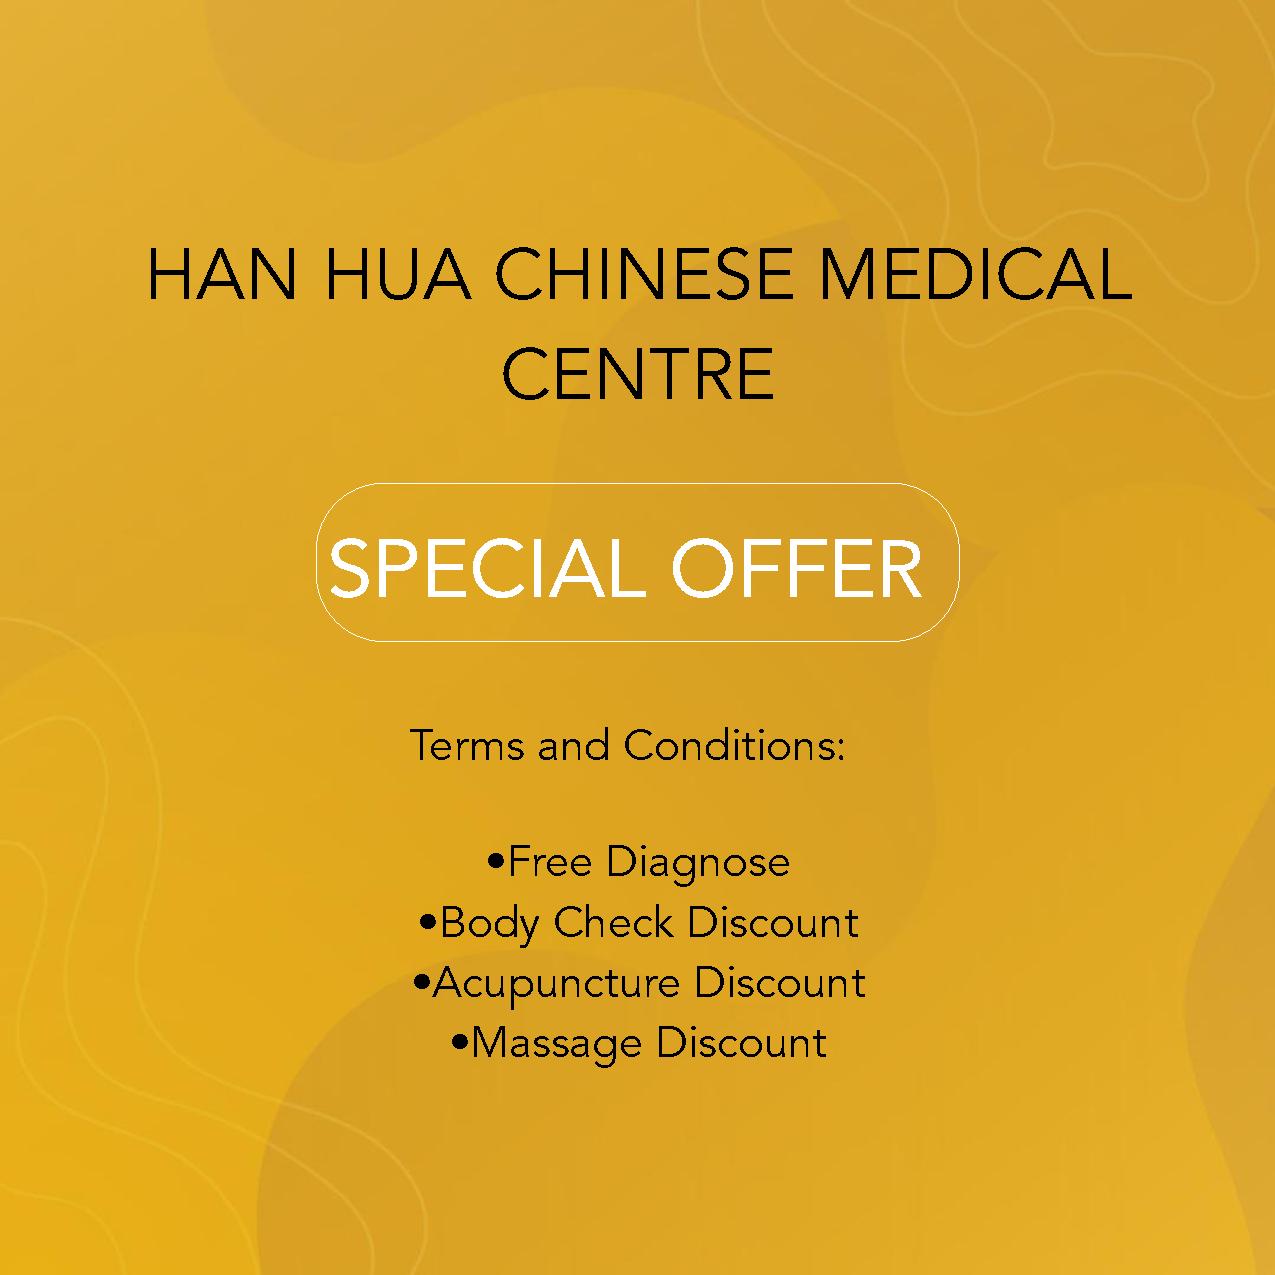 HAN HUA CHINESE MEDICAL CENTRE